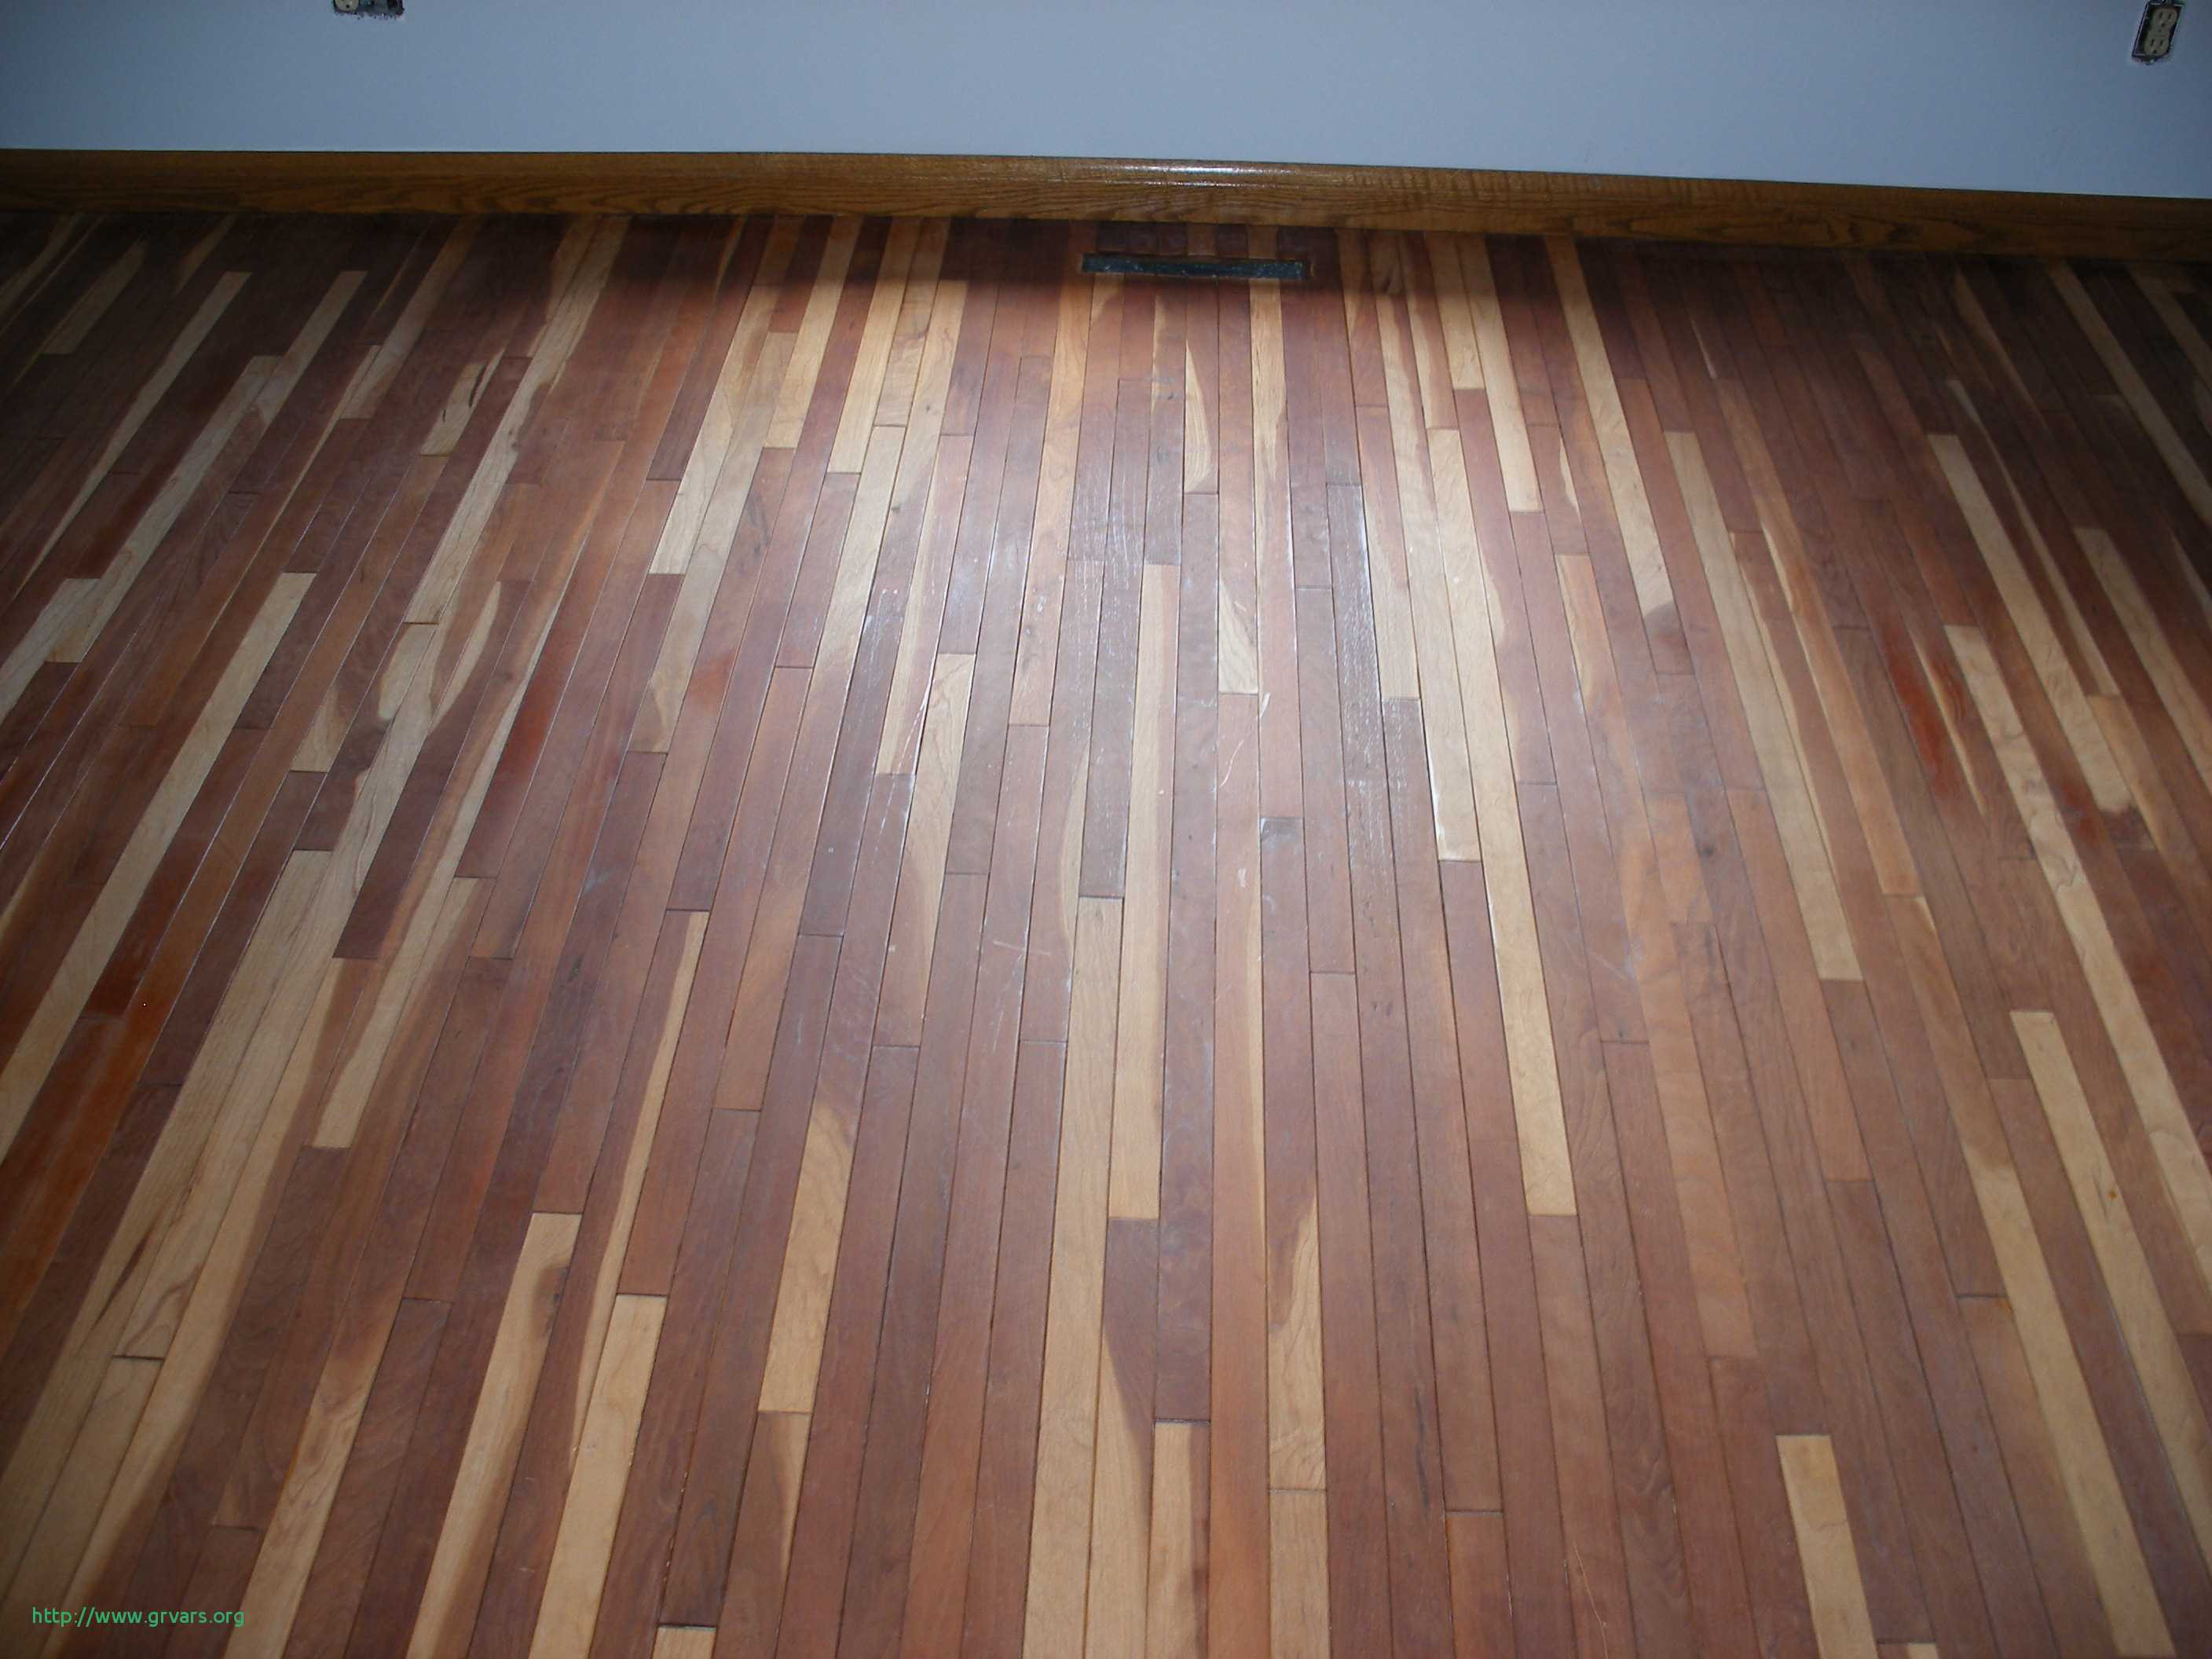 23 Great Hardwood Floor Refinishing Utah Unique Flooring Ideas